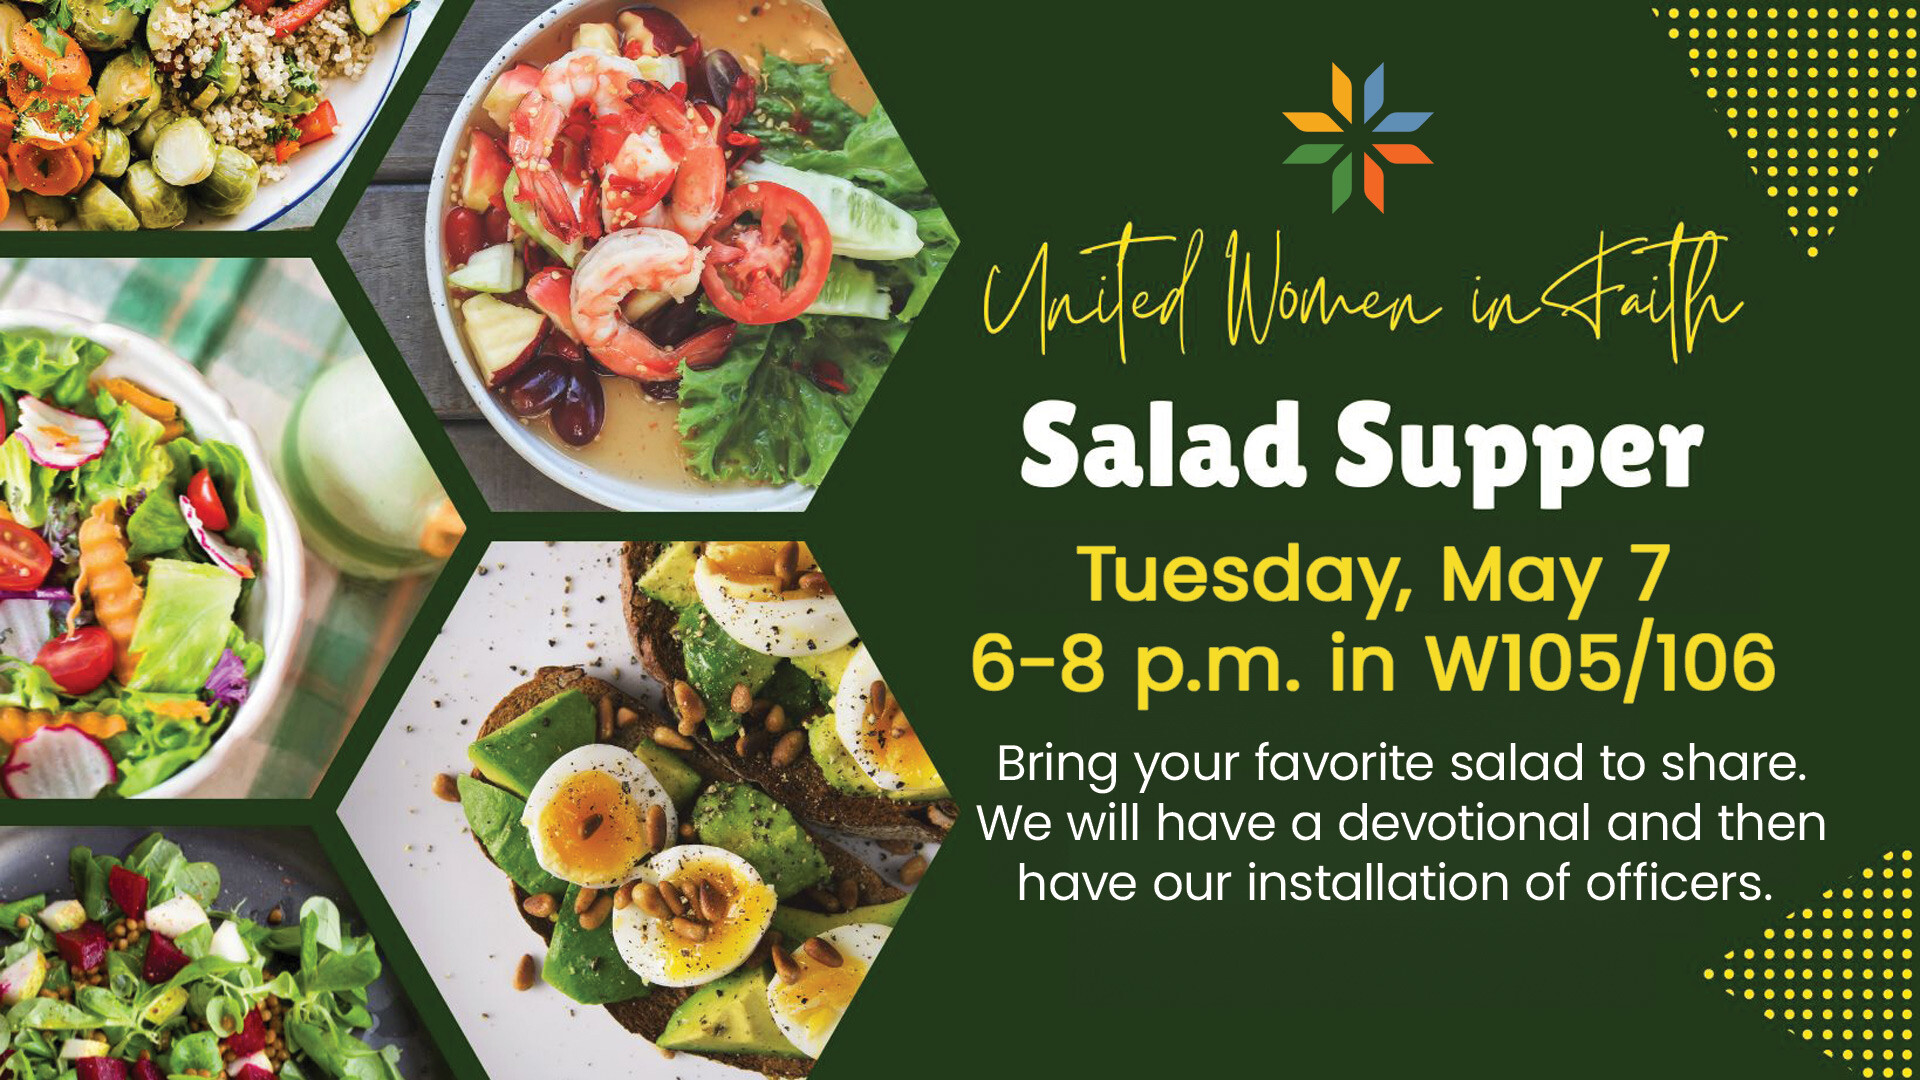 United Women in Faith-- UWF Spring Salad Supper - W105/106